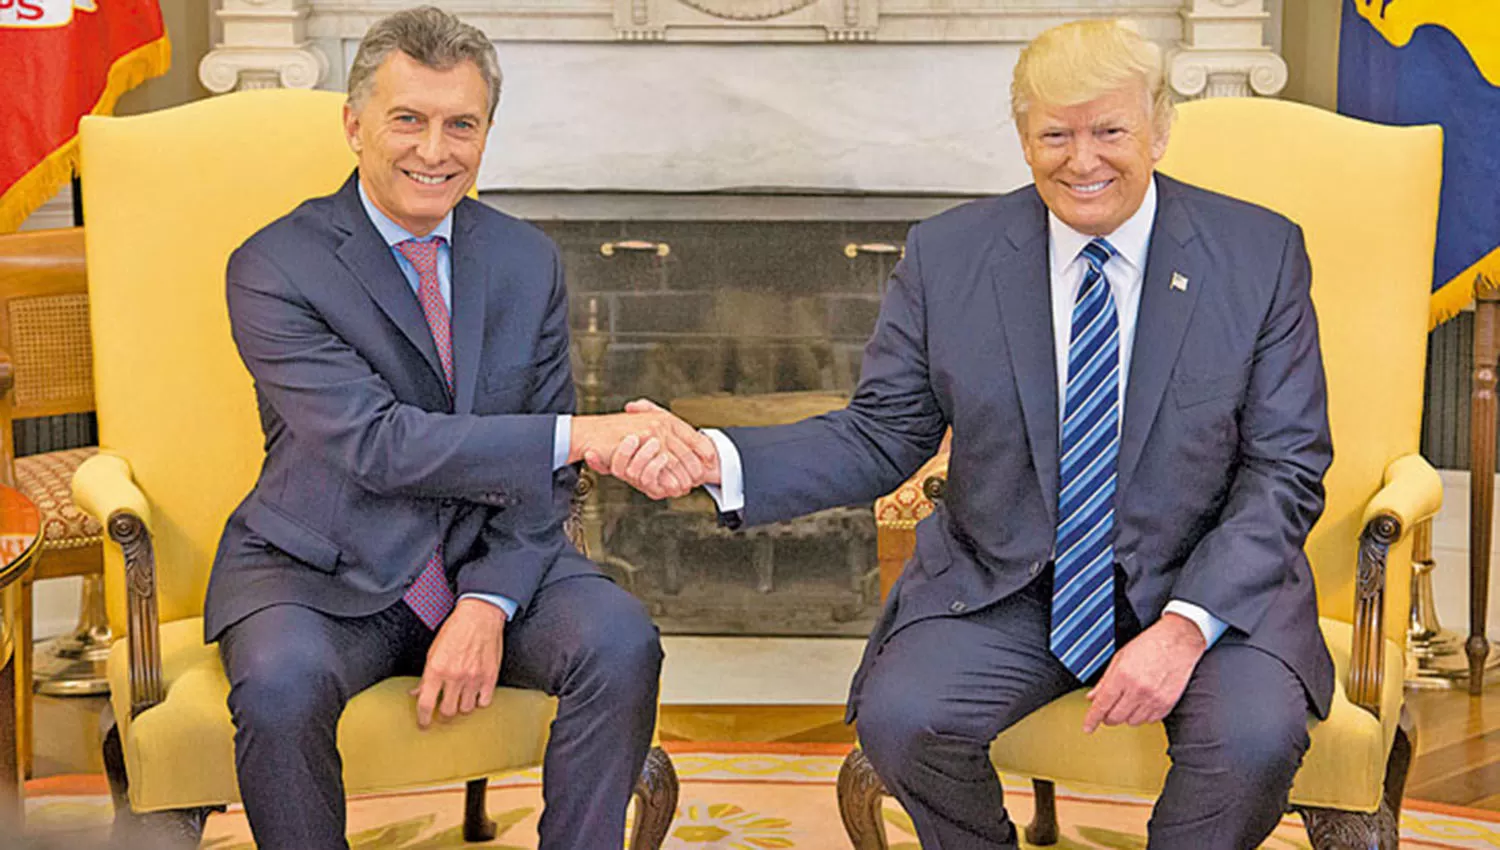 Apoyo de Trump: Macri está haciendo un trabajo excelente ante las dificultades